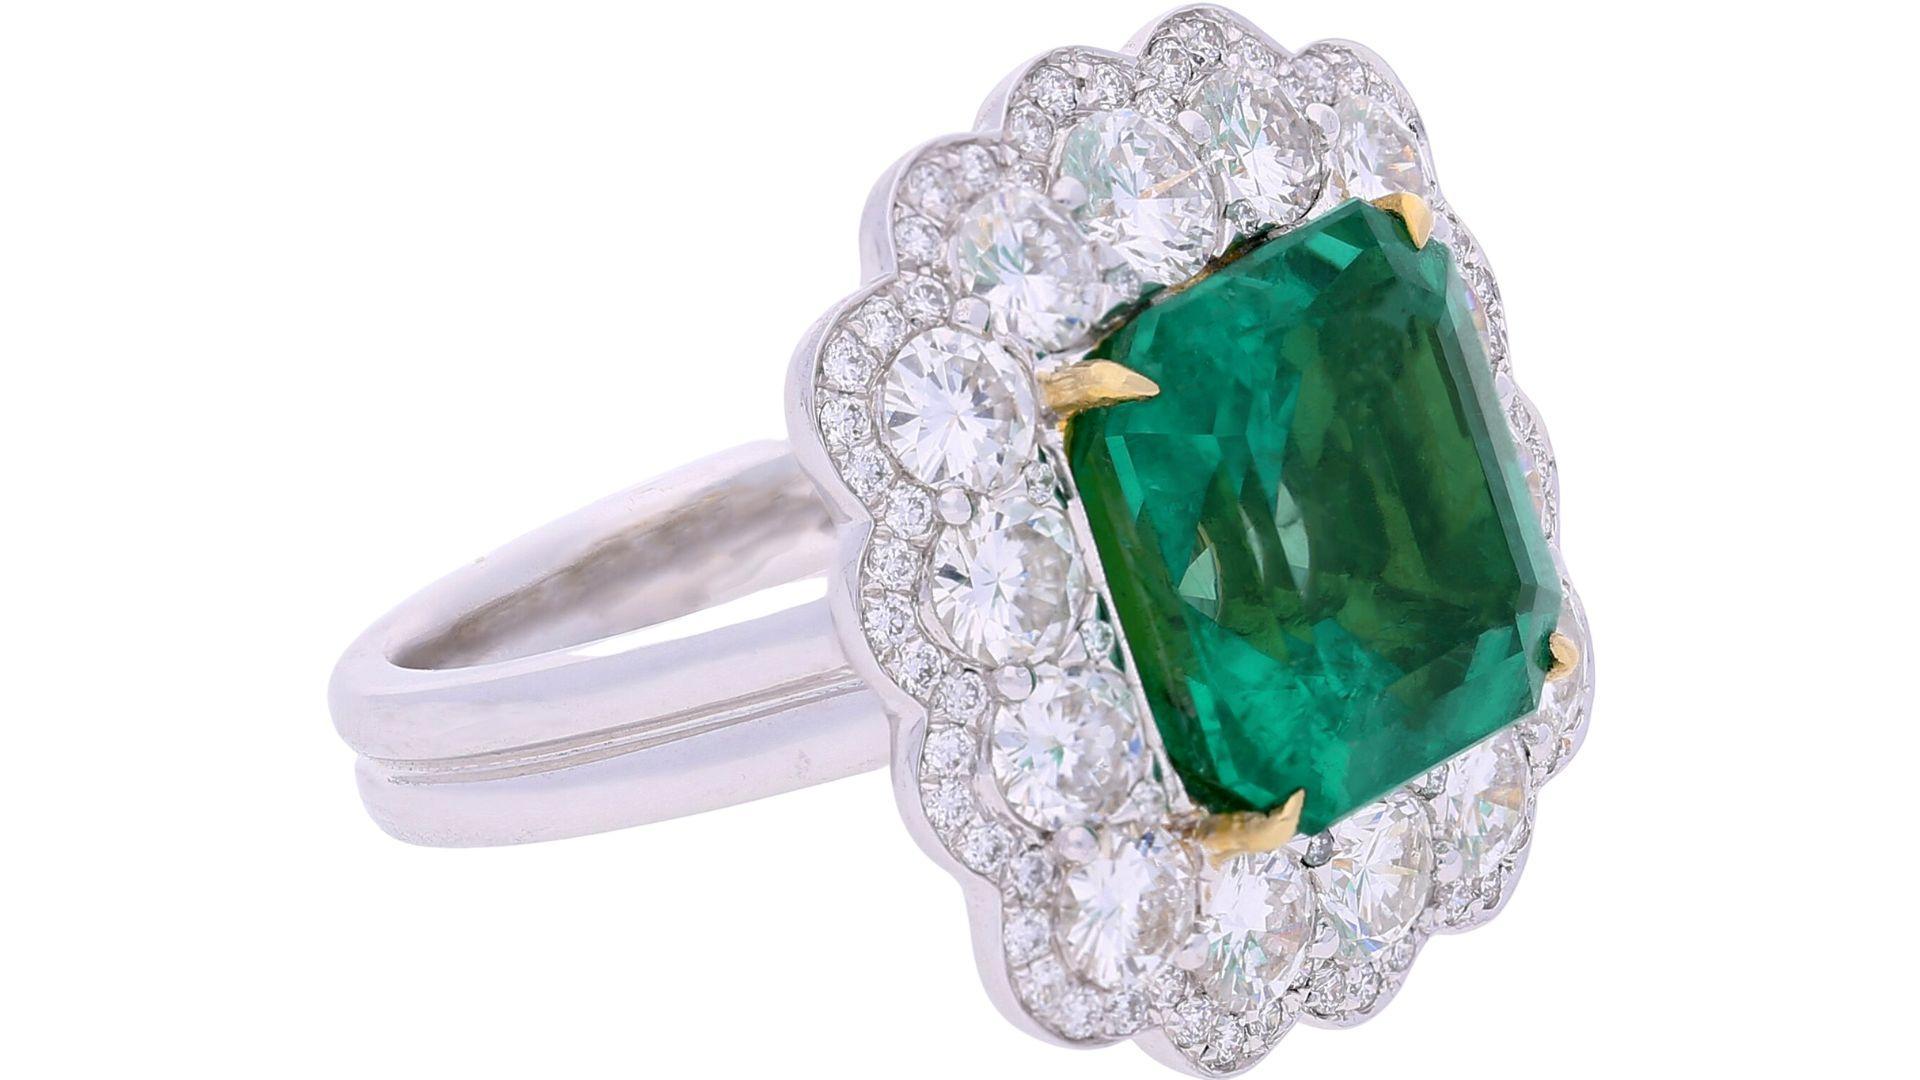 GRS-zertifiziert 8,04 Karat achteckigen Smaragd geschnitten Moll-moderate Öl kolumbianischen natürlichen Smaragd & Diamant Halo-Ring. 

Einzelheiten: 
✔ Art des Artikels: Ring 
✔ Metall: 18k Gelb- und Weißgold 
)
✔ Gewicht: 10,89 Gramm
✔ Fassung: